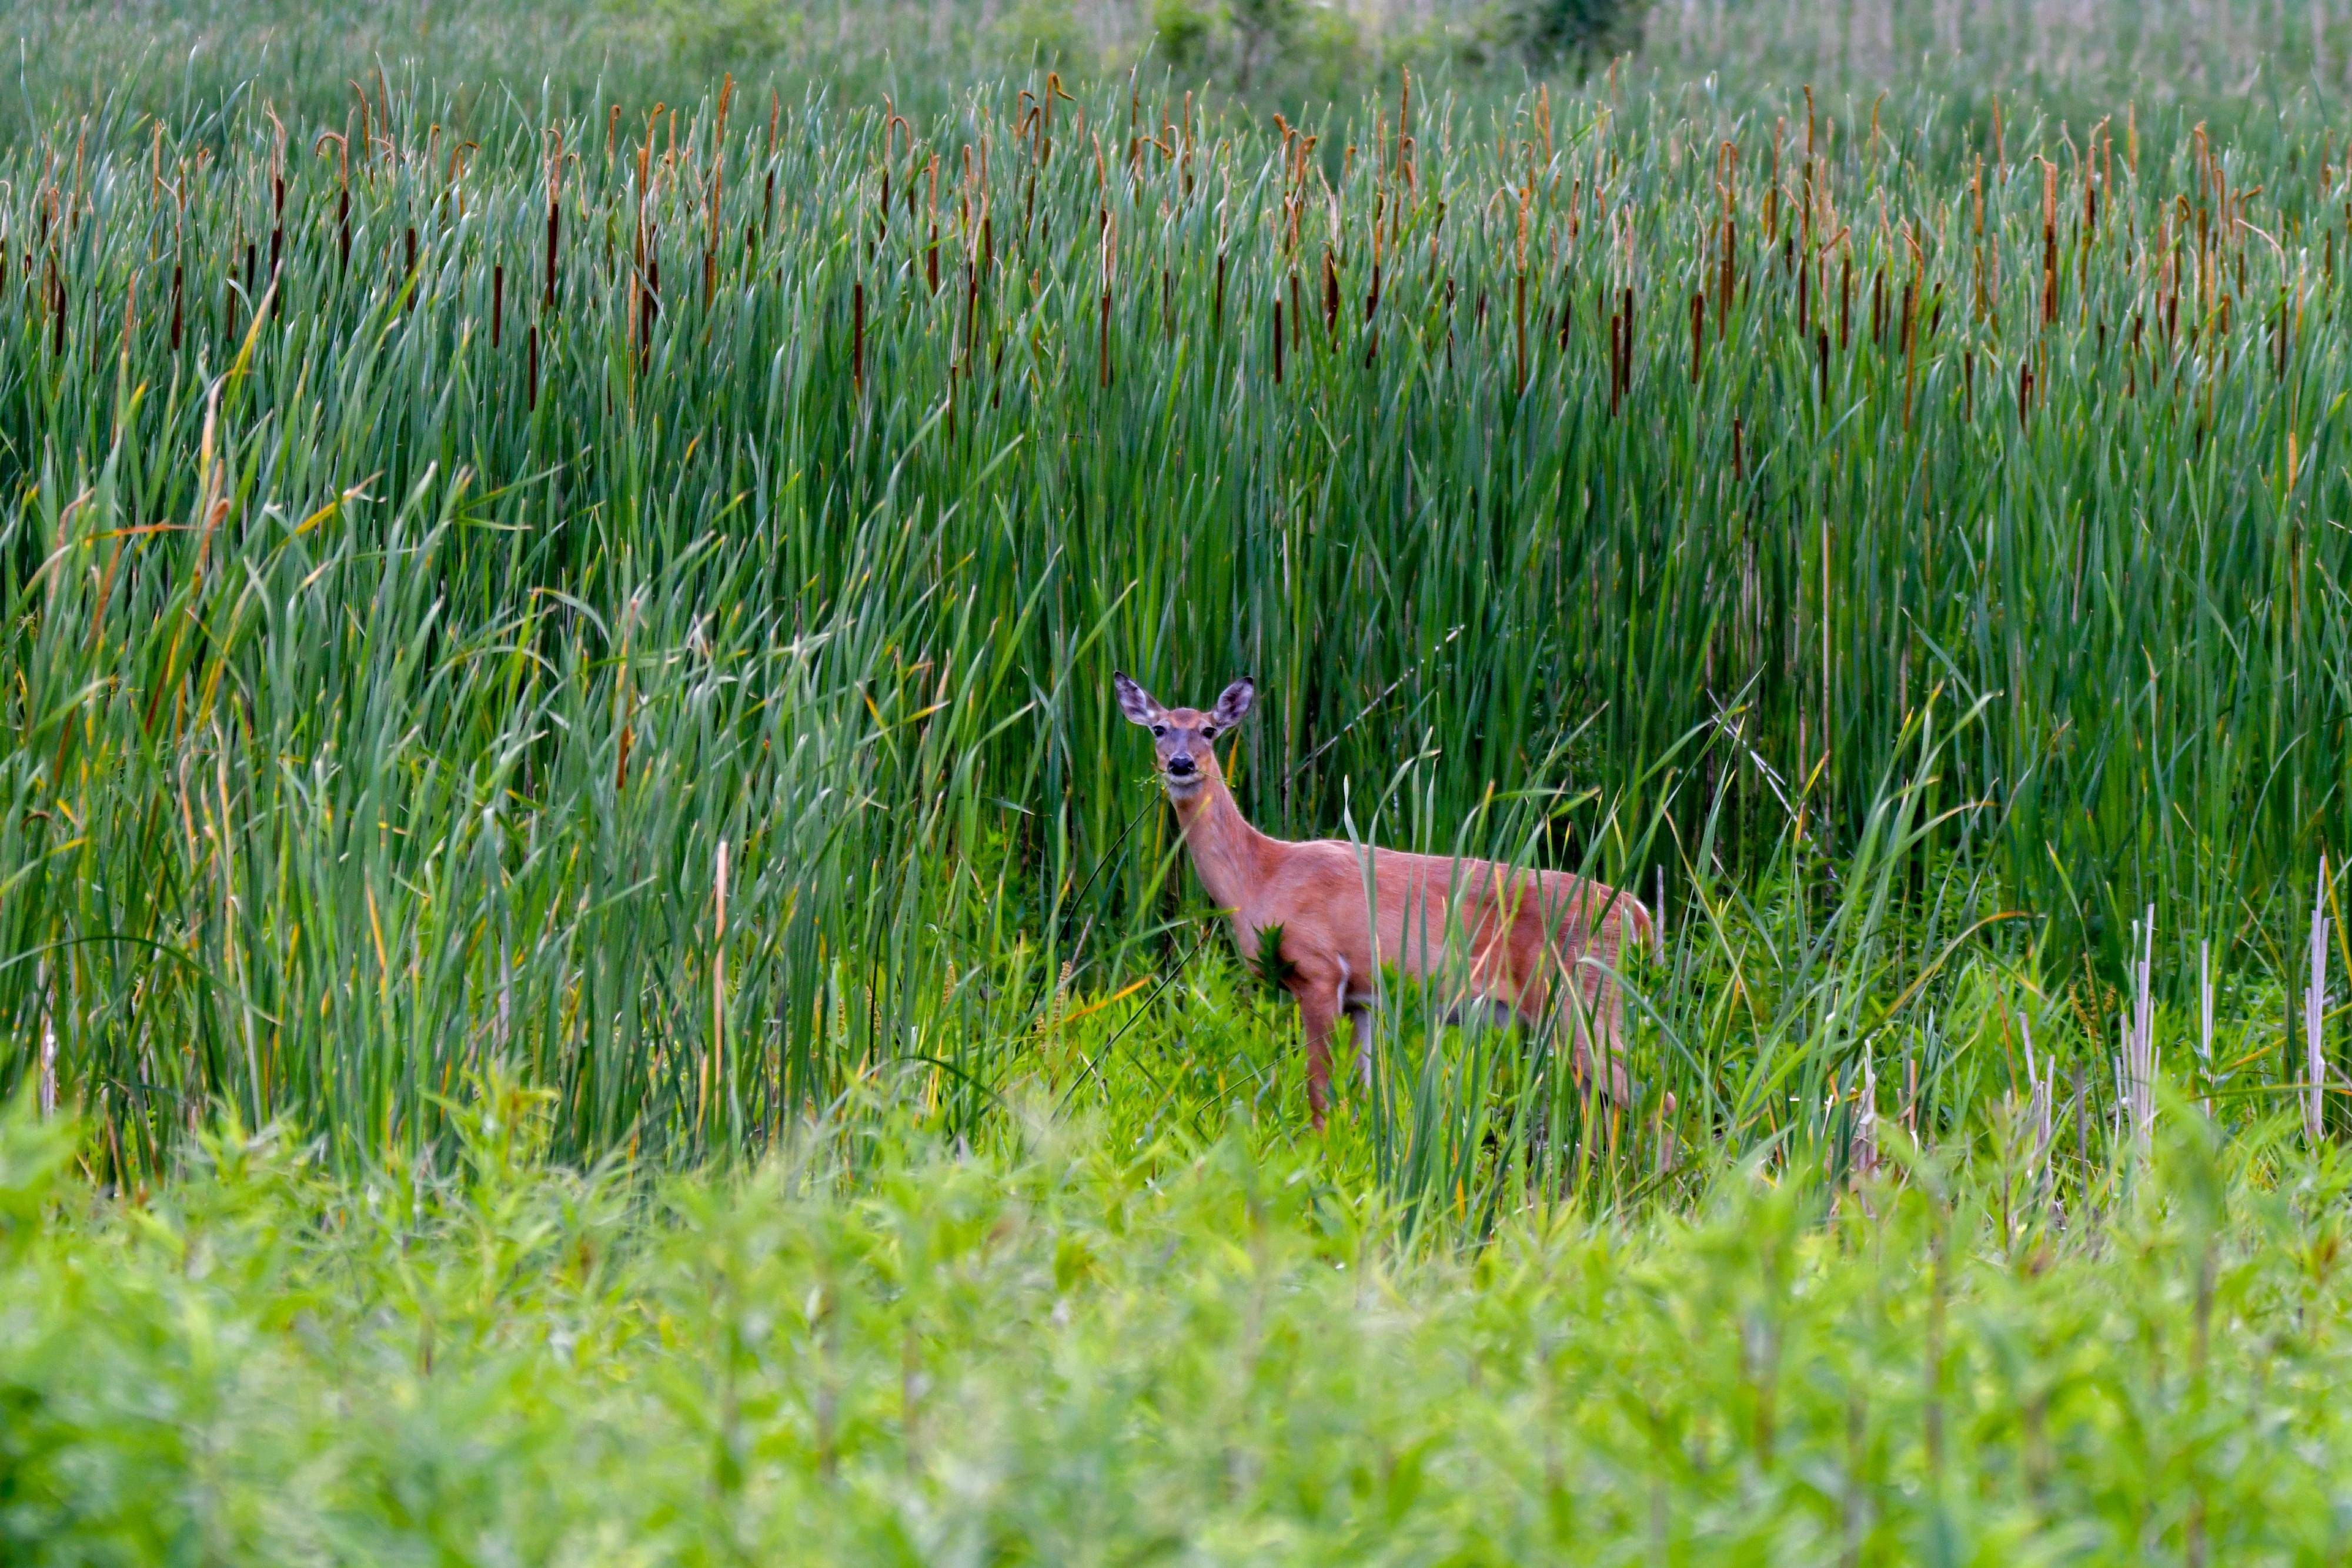 A deer eating vegetation in a prairie.